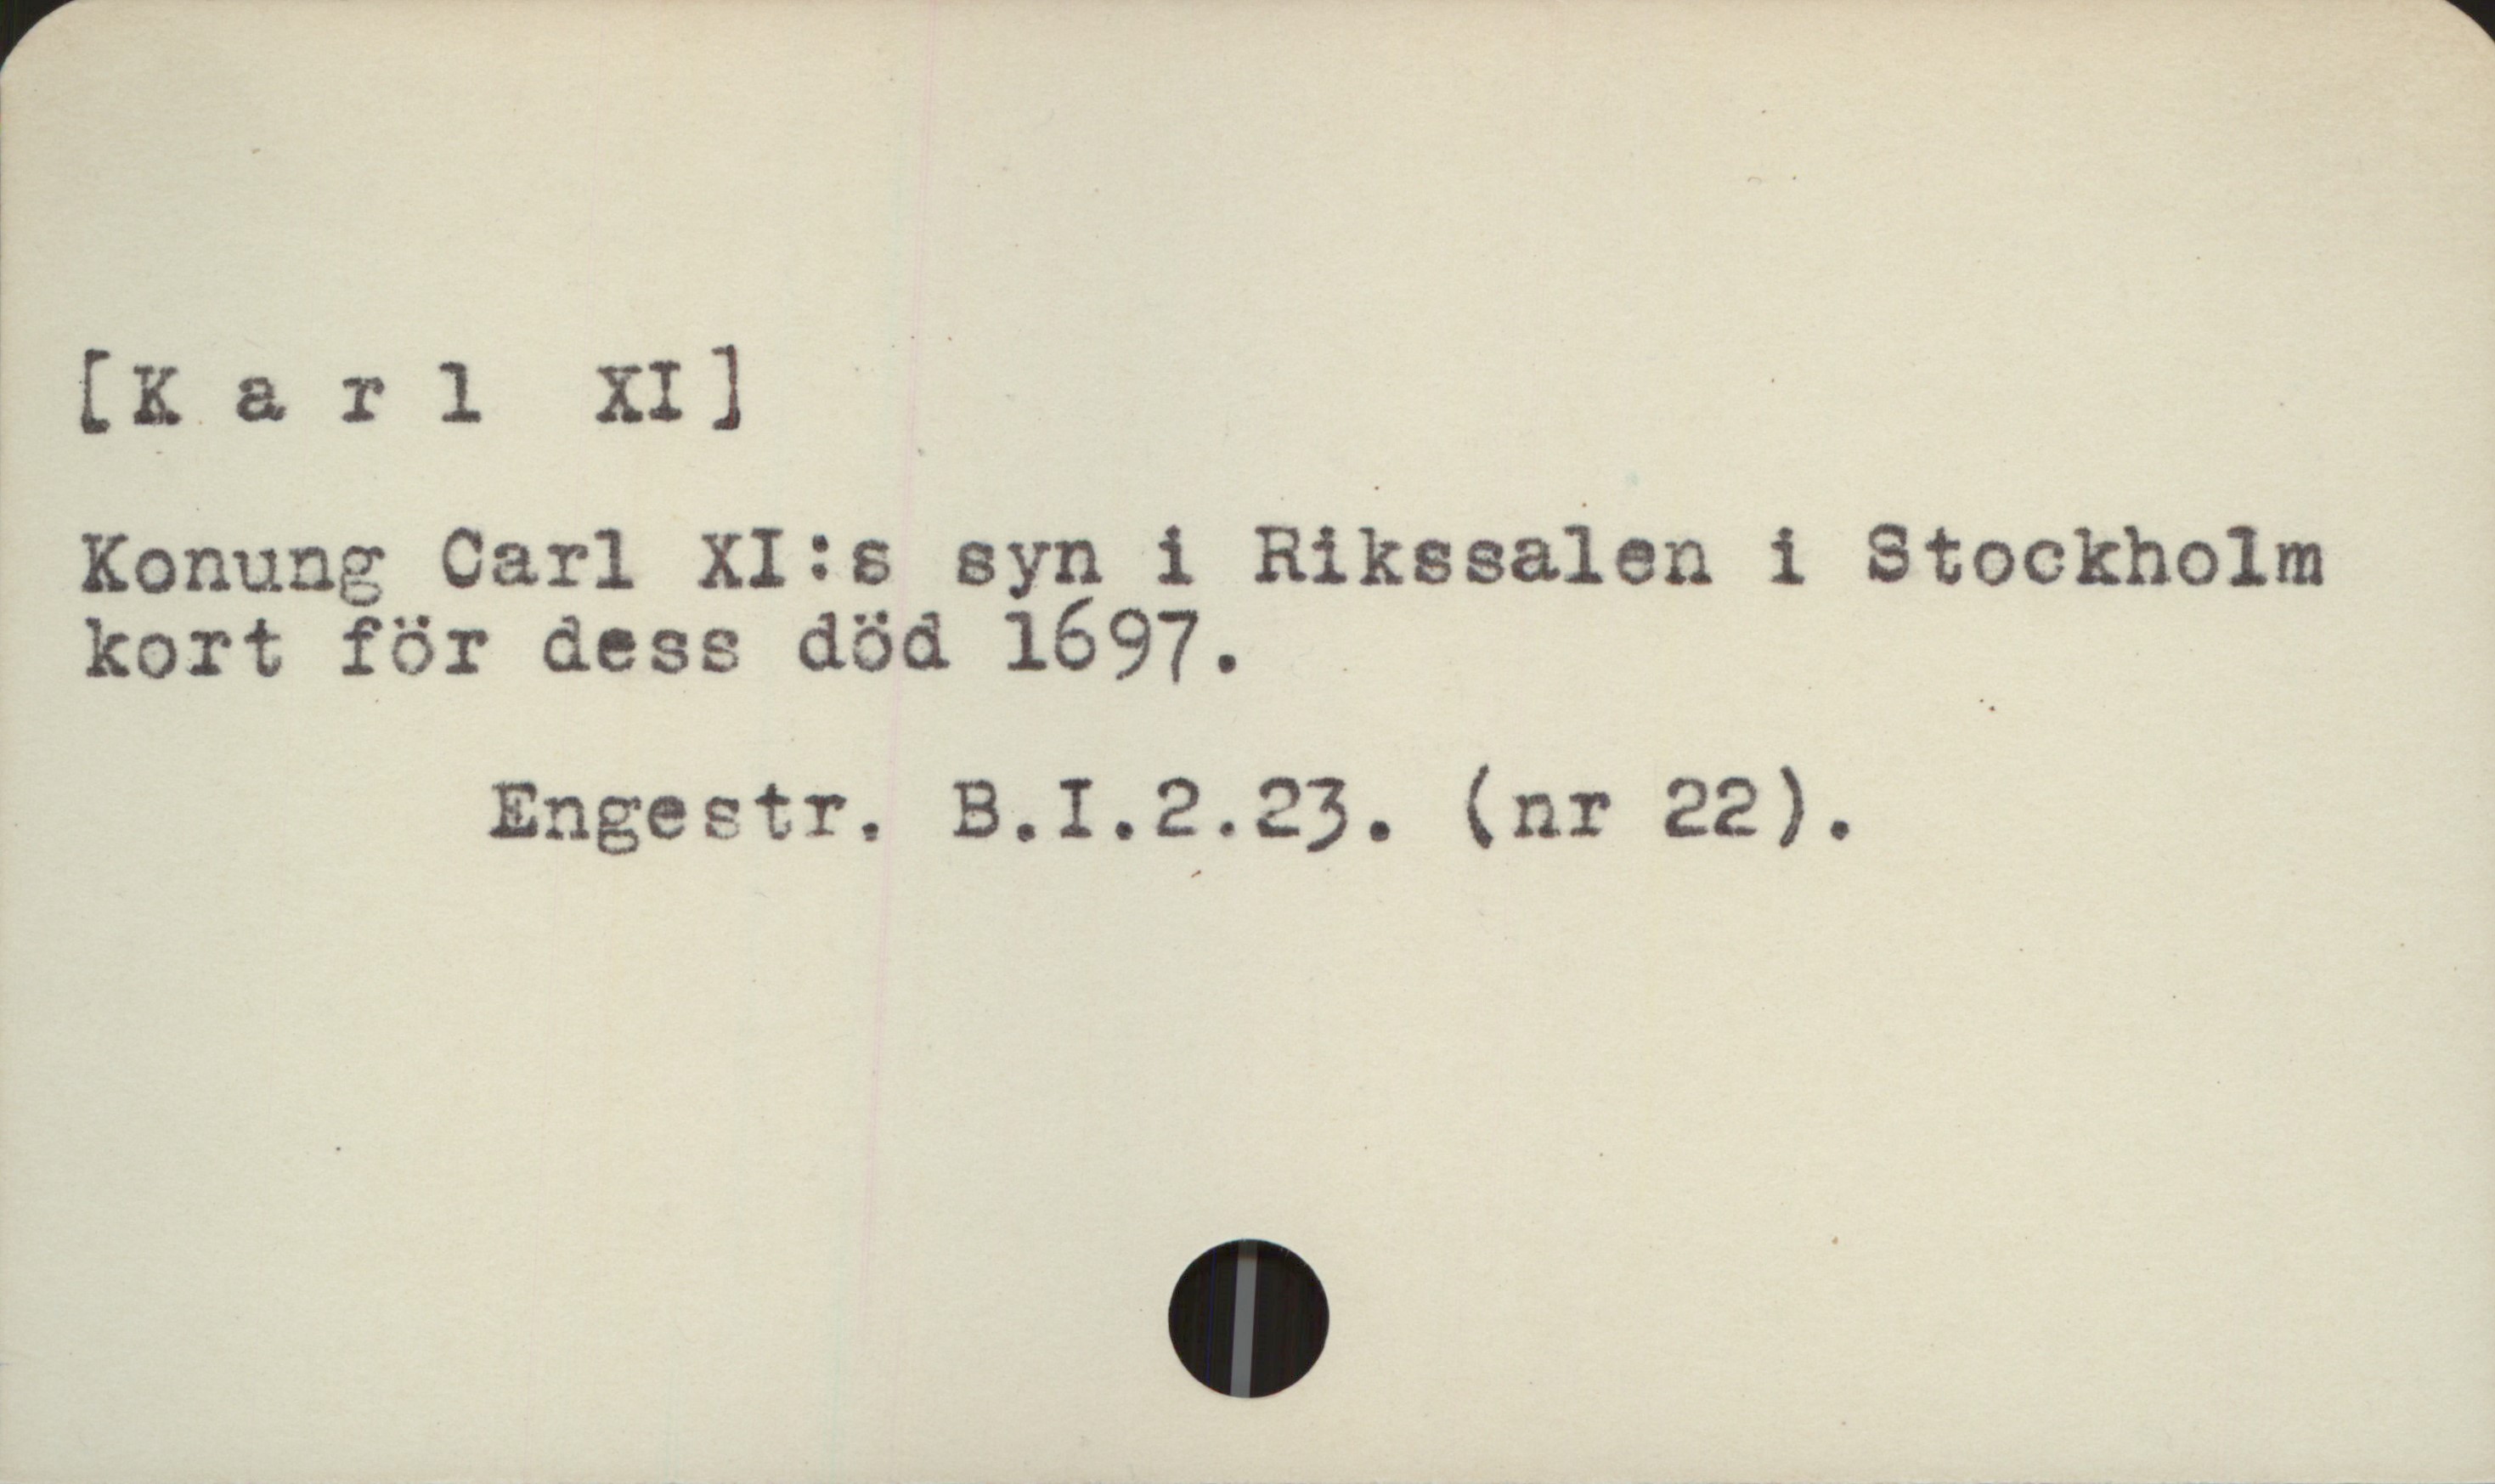  [karl XI] -/ '

Konung Carl XI:s syn i Rikssalen i Stockholm

kort för dess död 1697. / .
Engestr. B.I.2.23. (nr 22).

